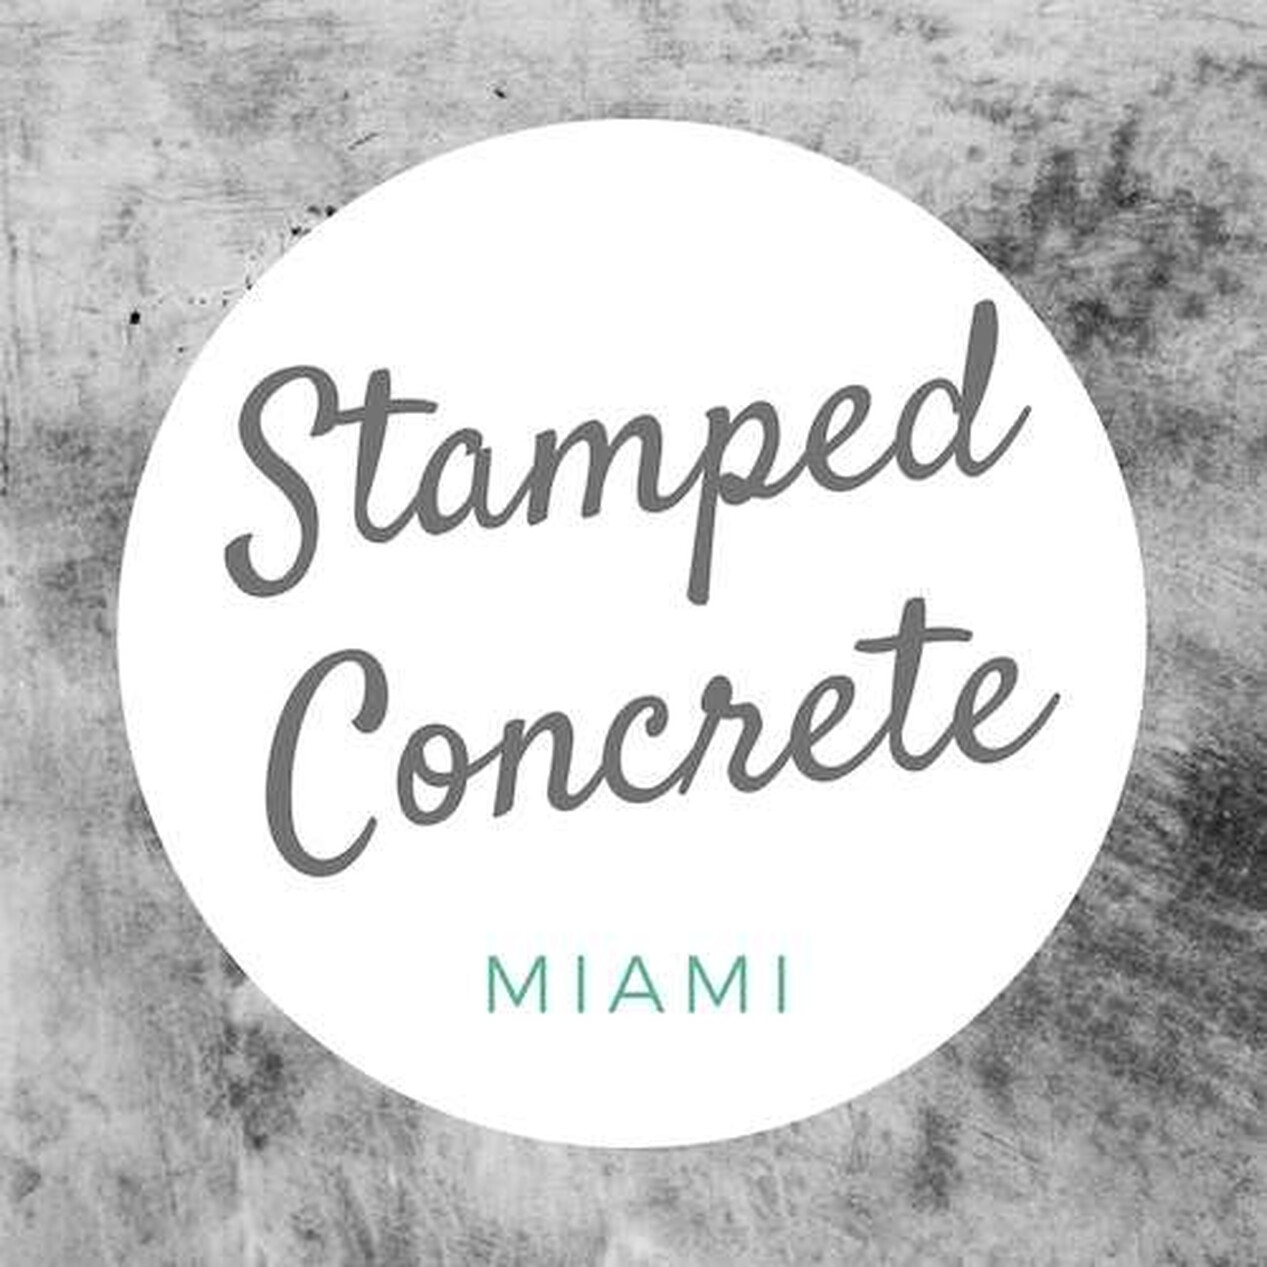 Stamped Concrete Miami